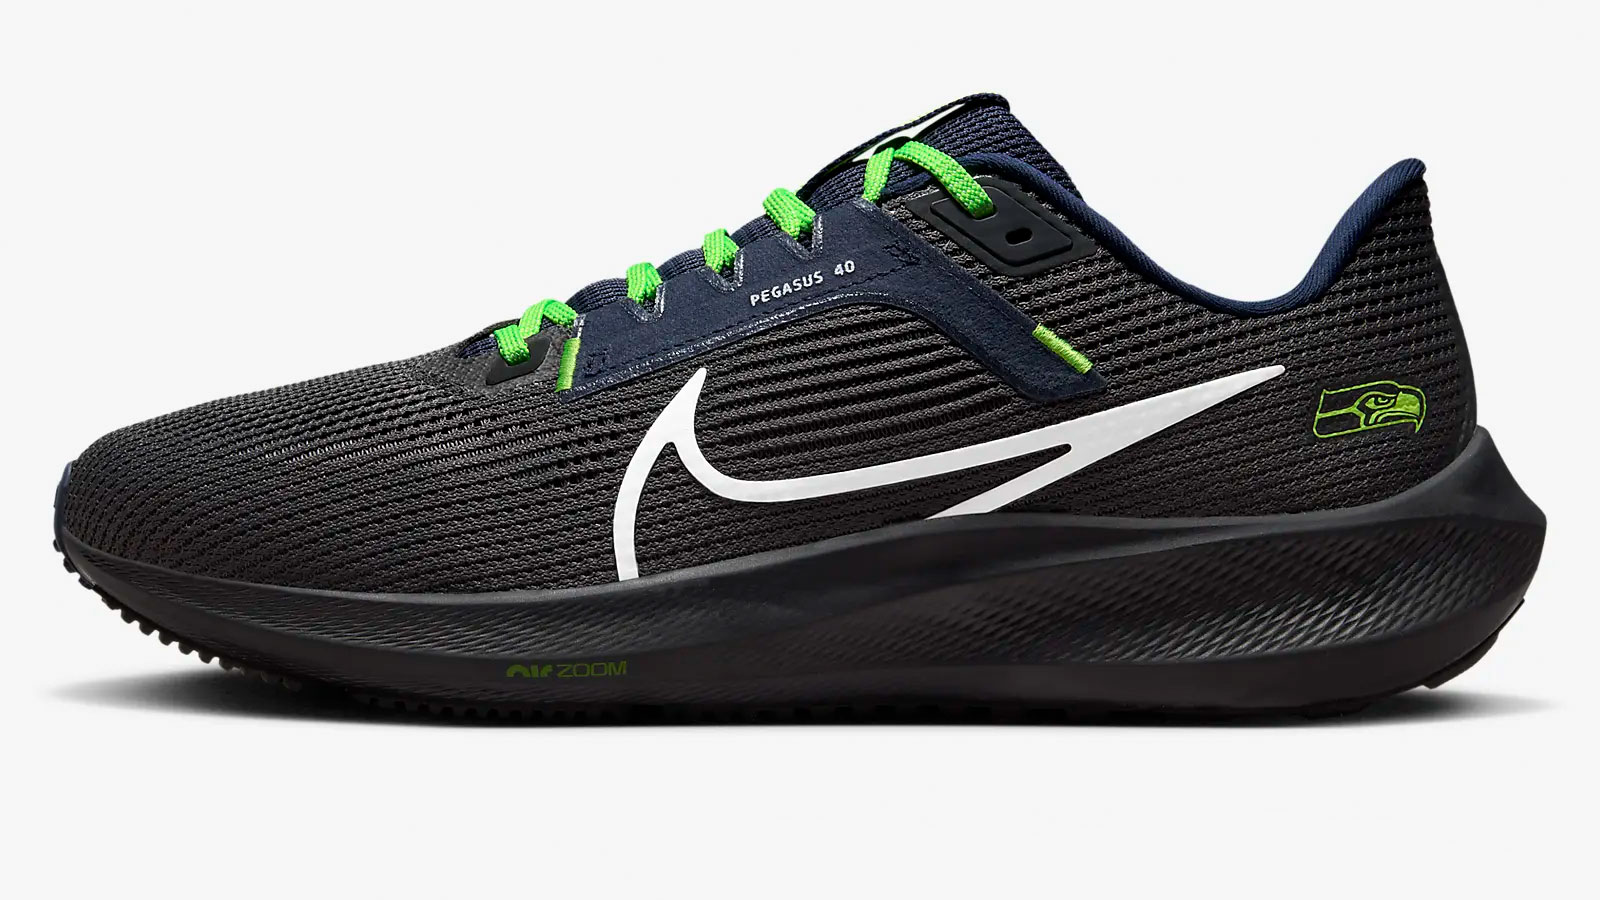 Las zapatillas para correr Pegasus 40 de Nike con temática de la NFL cuestan solo $ 54 en este momento, en lugar de $ 140